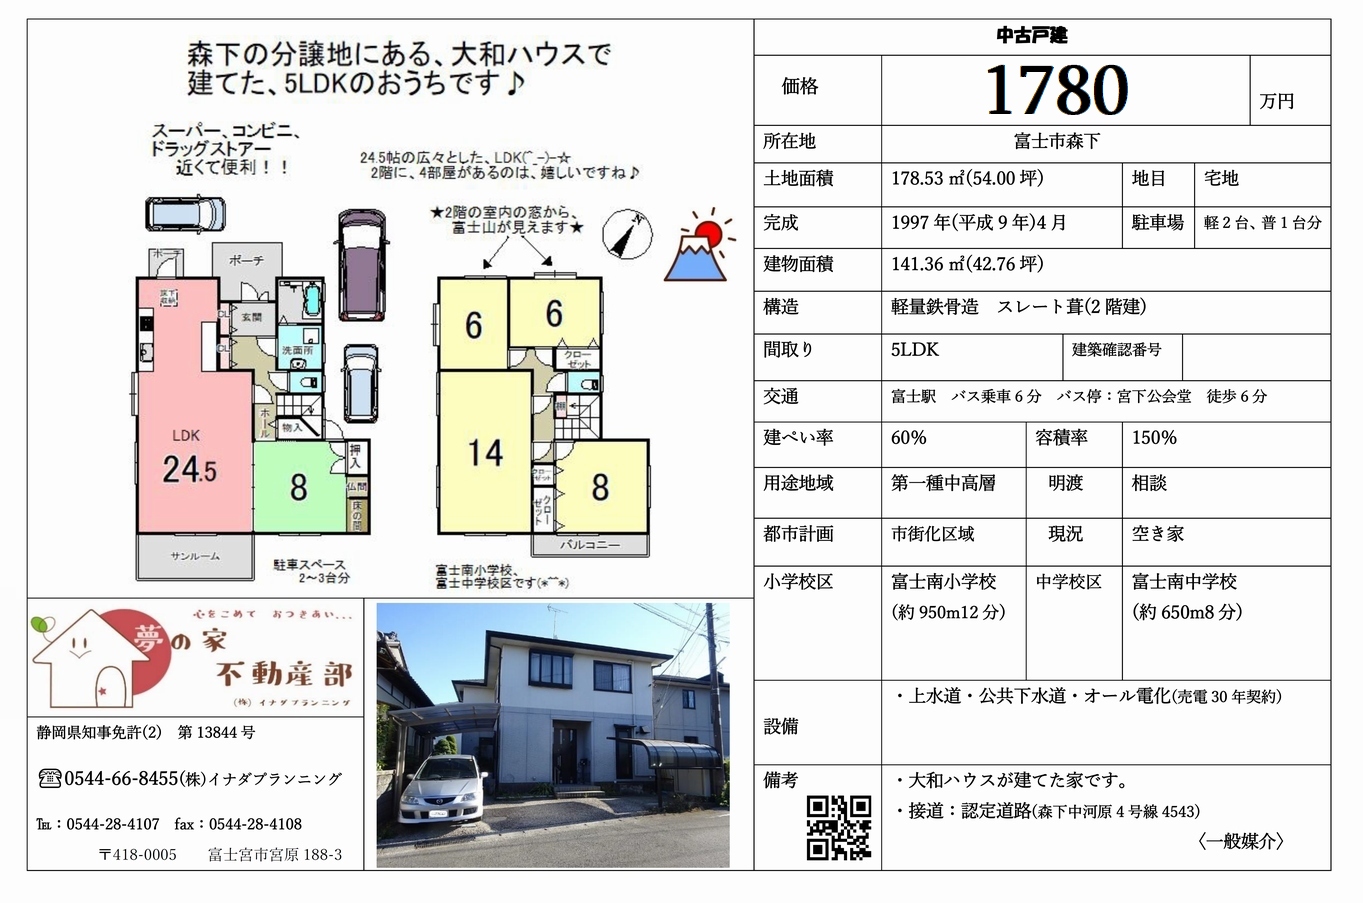 中古住宅 静岡県富士市森下5LDK 敷地54坪のマイソク画像です。